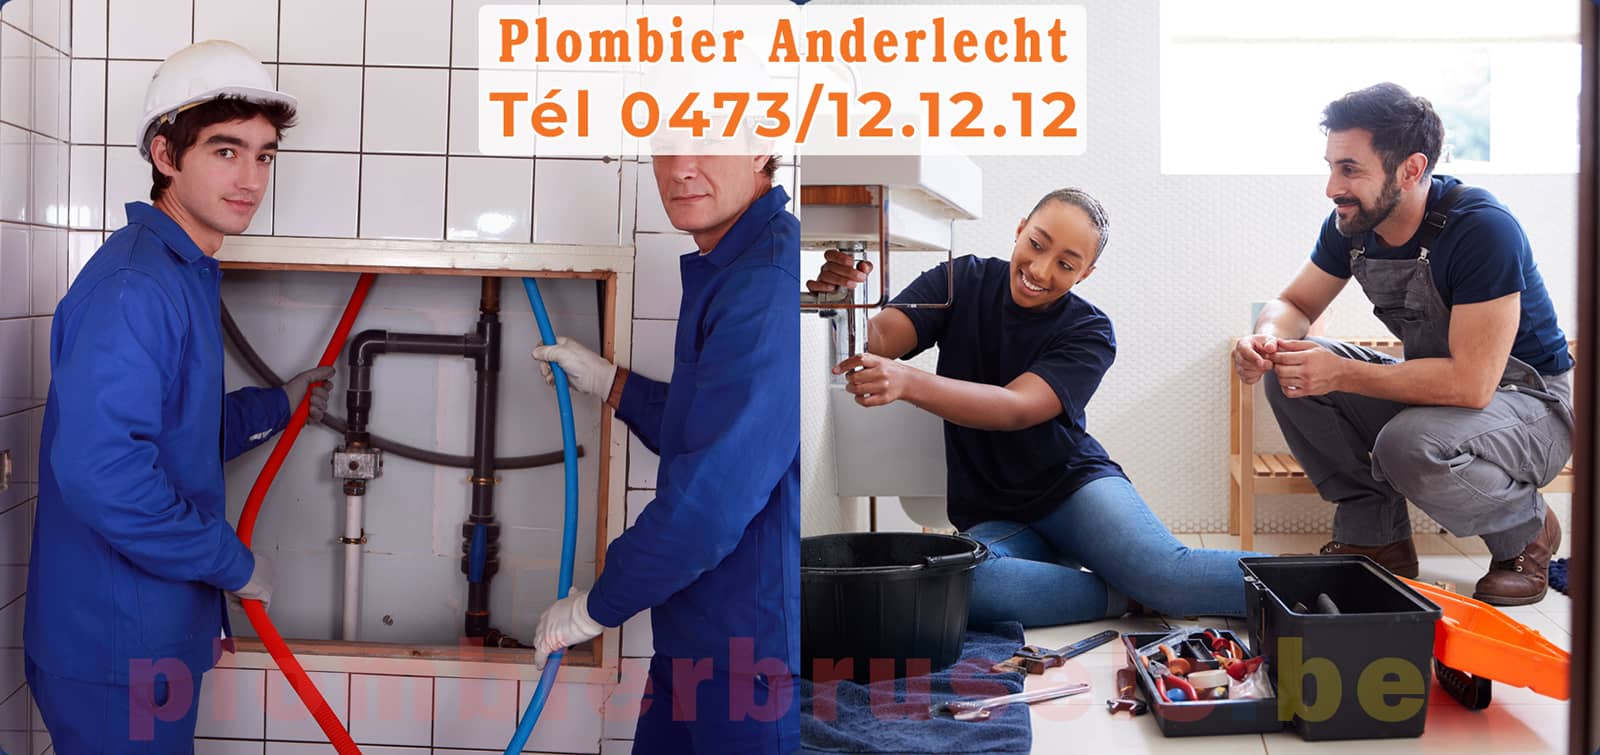 Plombier Anderlecht service de Plomberie tél 0473/12.12.12